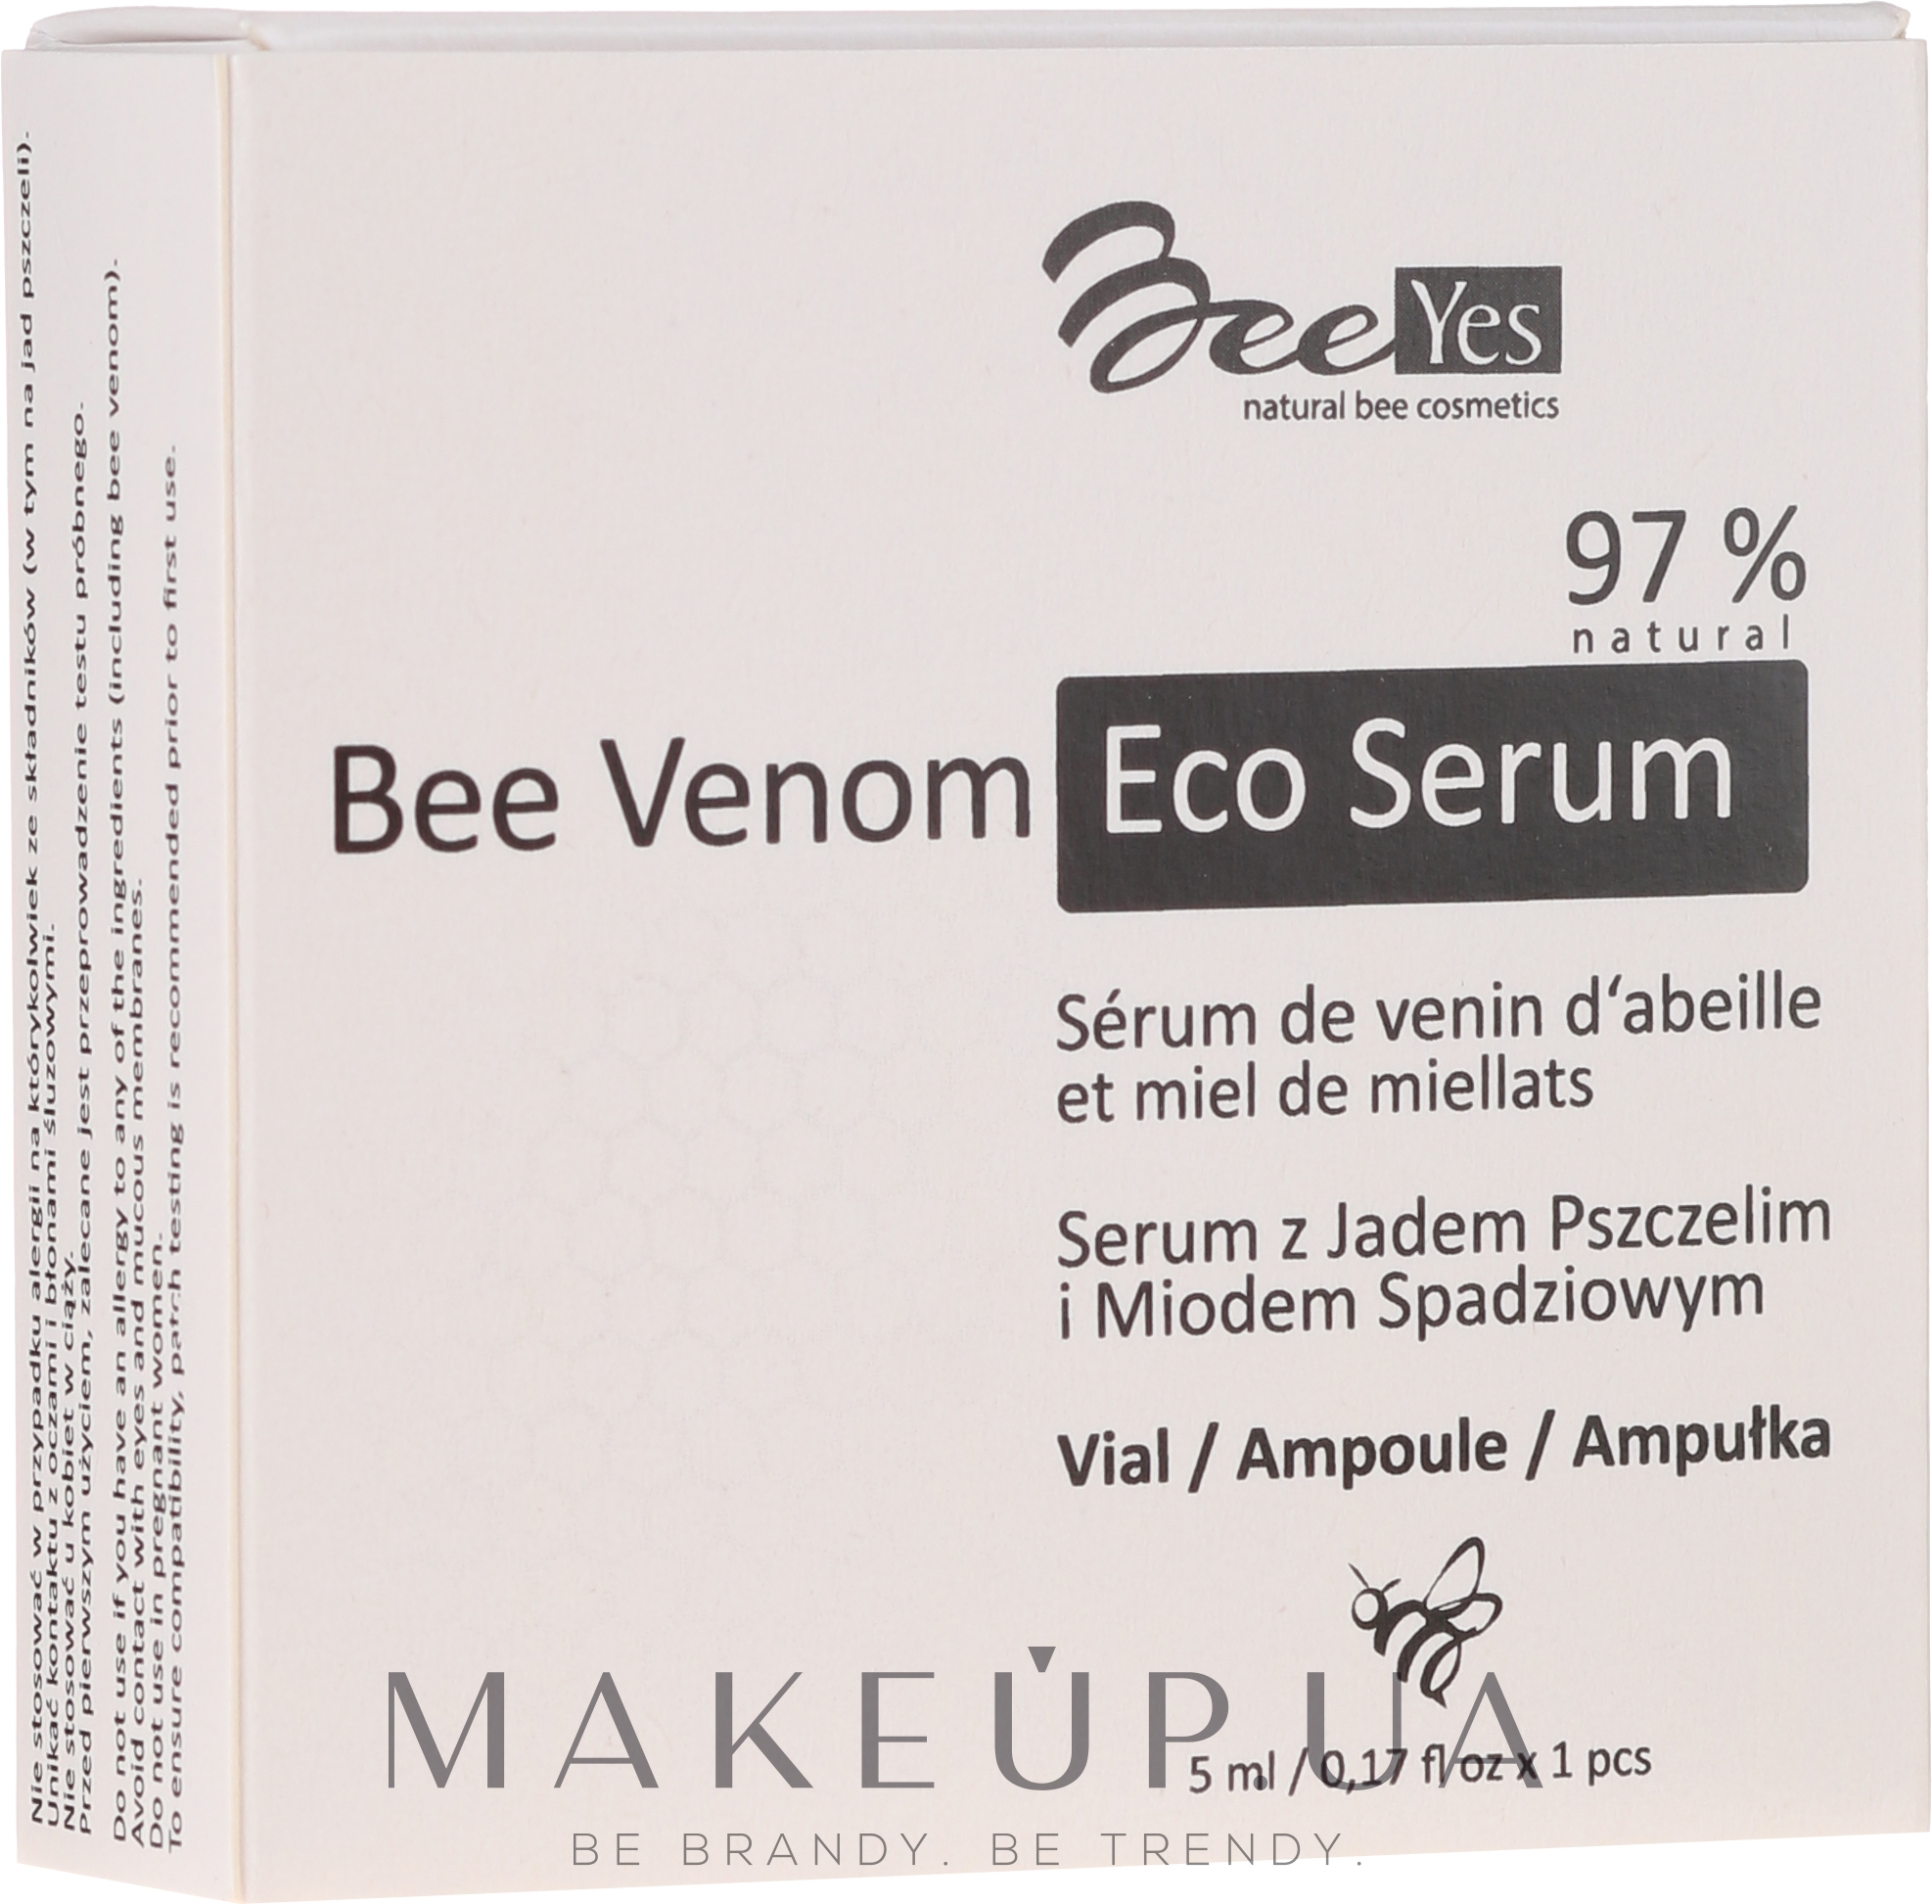 Антивозрастная увлажняющая сыворотка для лица - BeeYes Bee Venom Eco Serum — фото 1x5ml